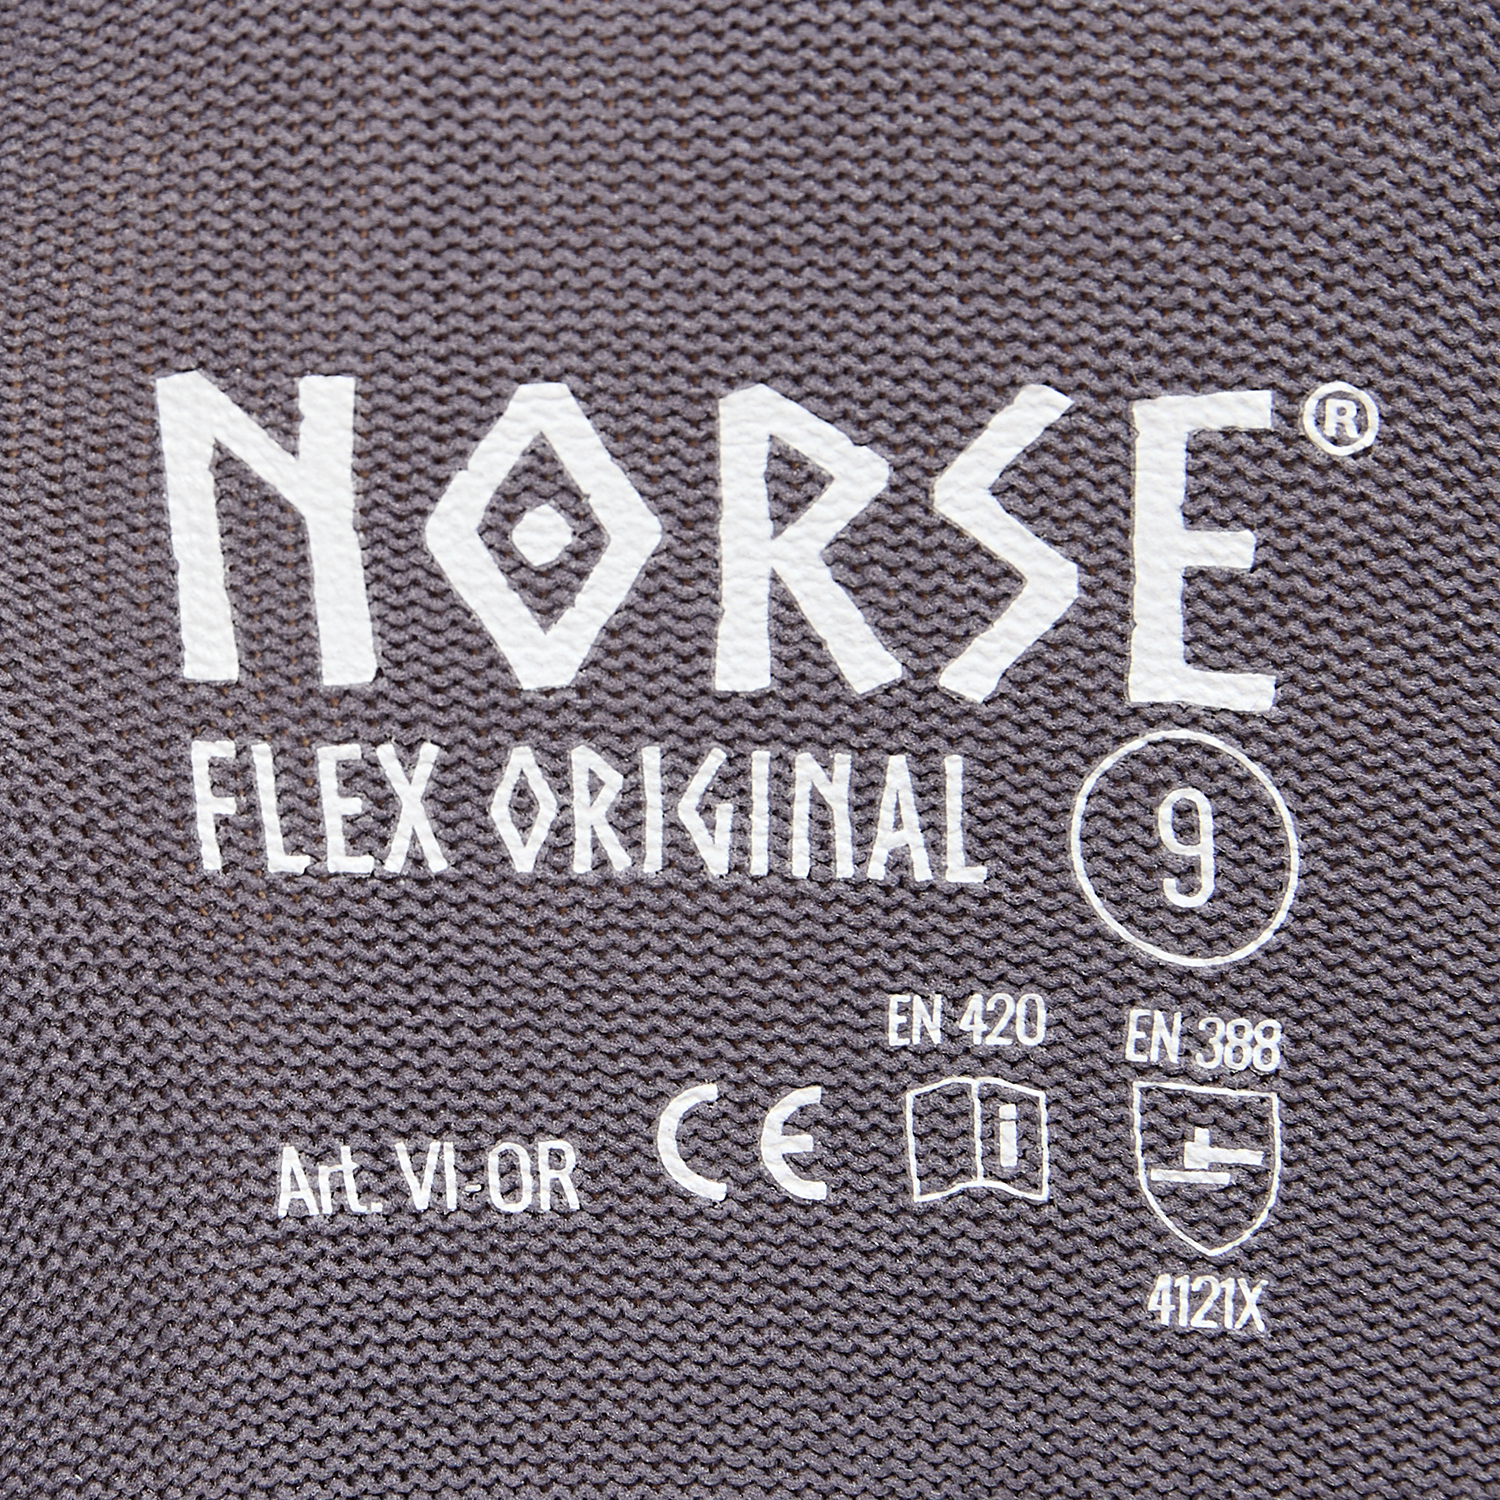 NORSE Flex Original montagehandschoenen maat 11